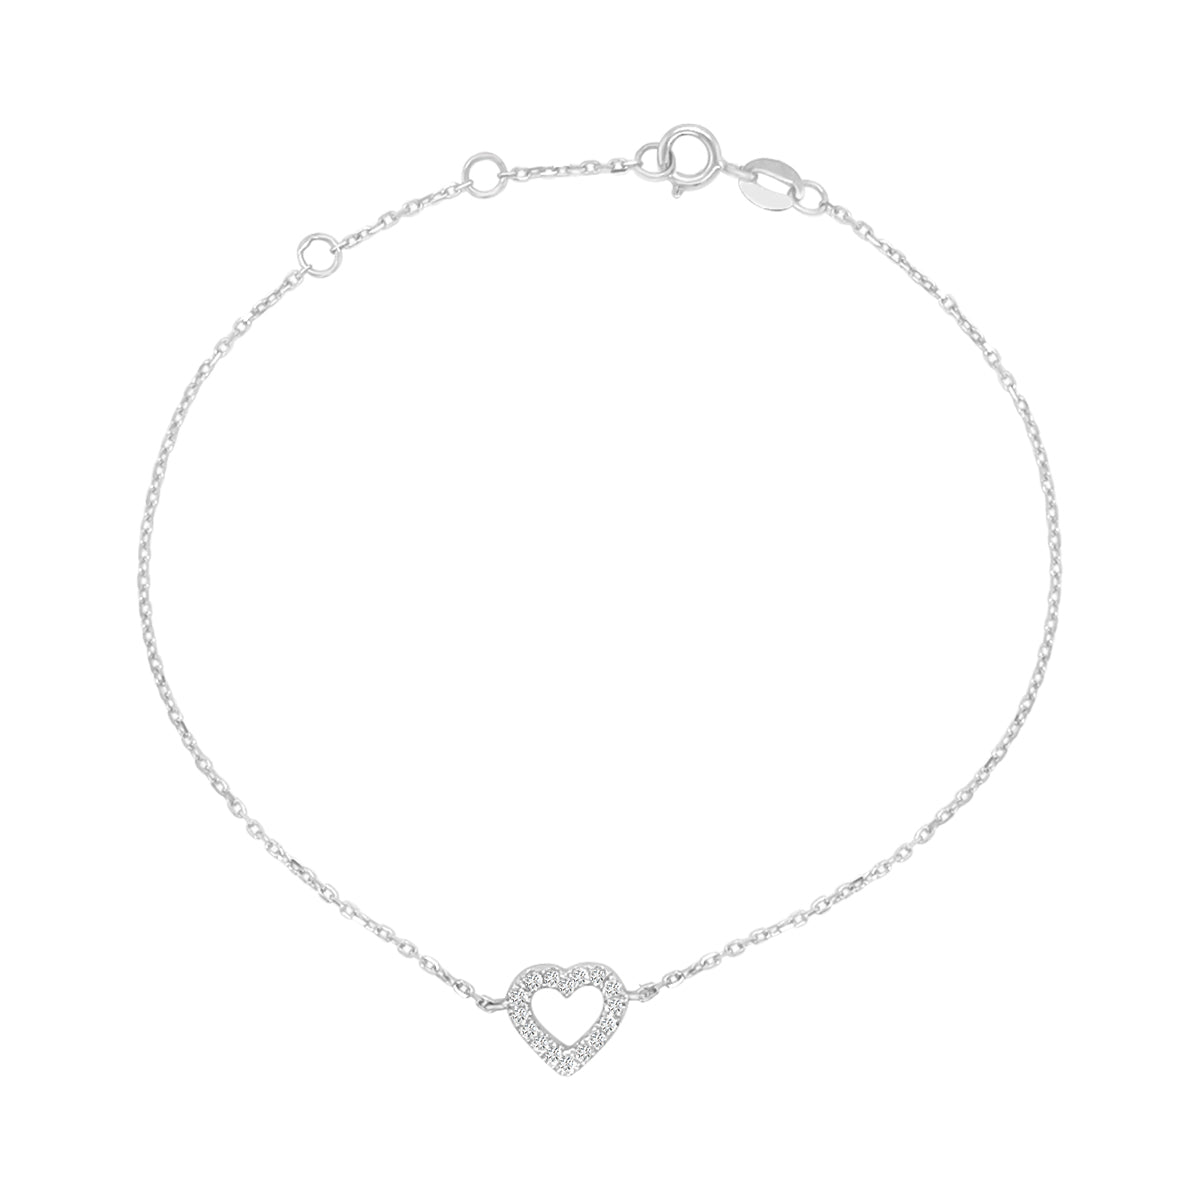 Heart Shaped Diamond Bracelet In 18k White Gold.